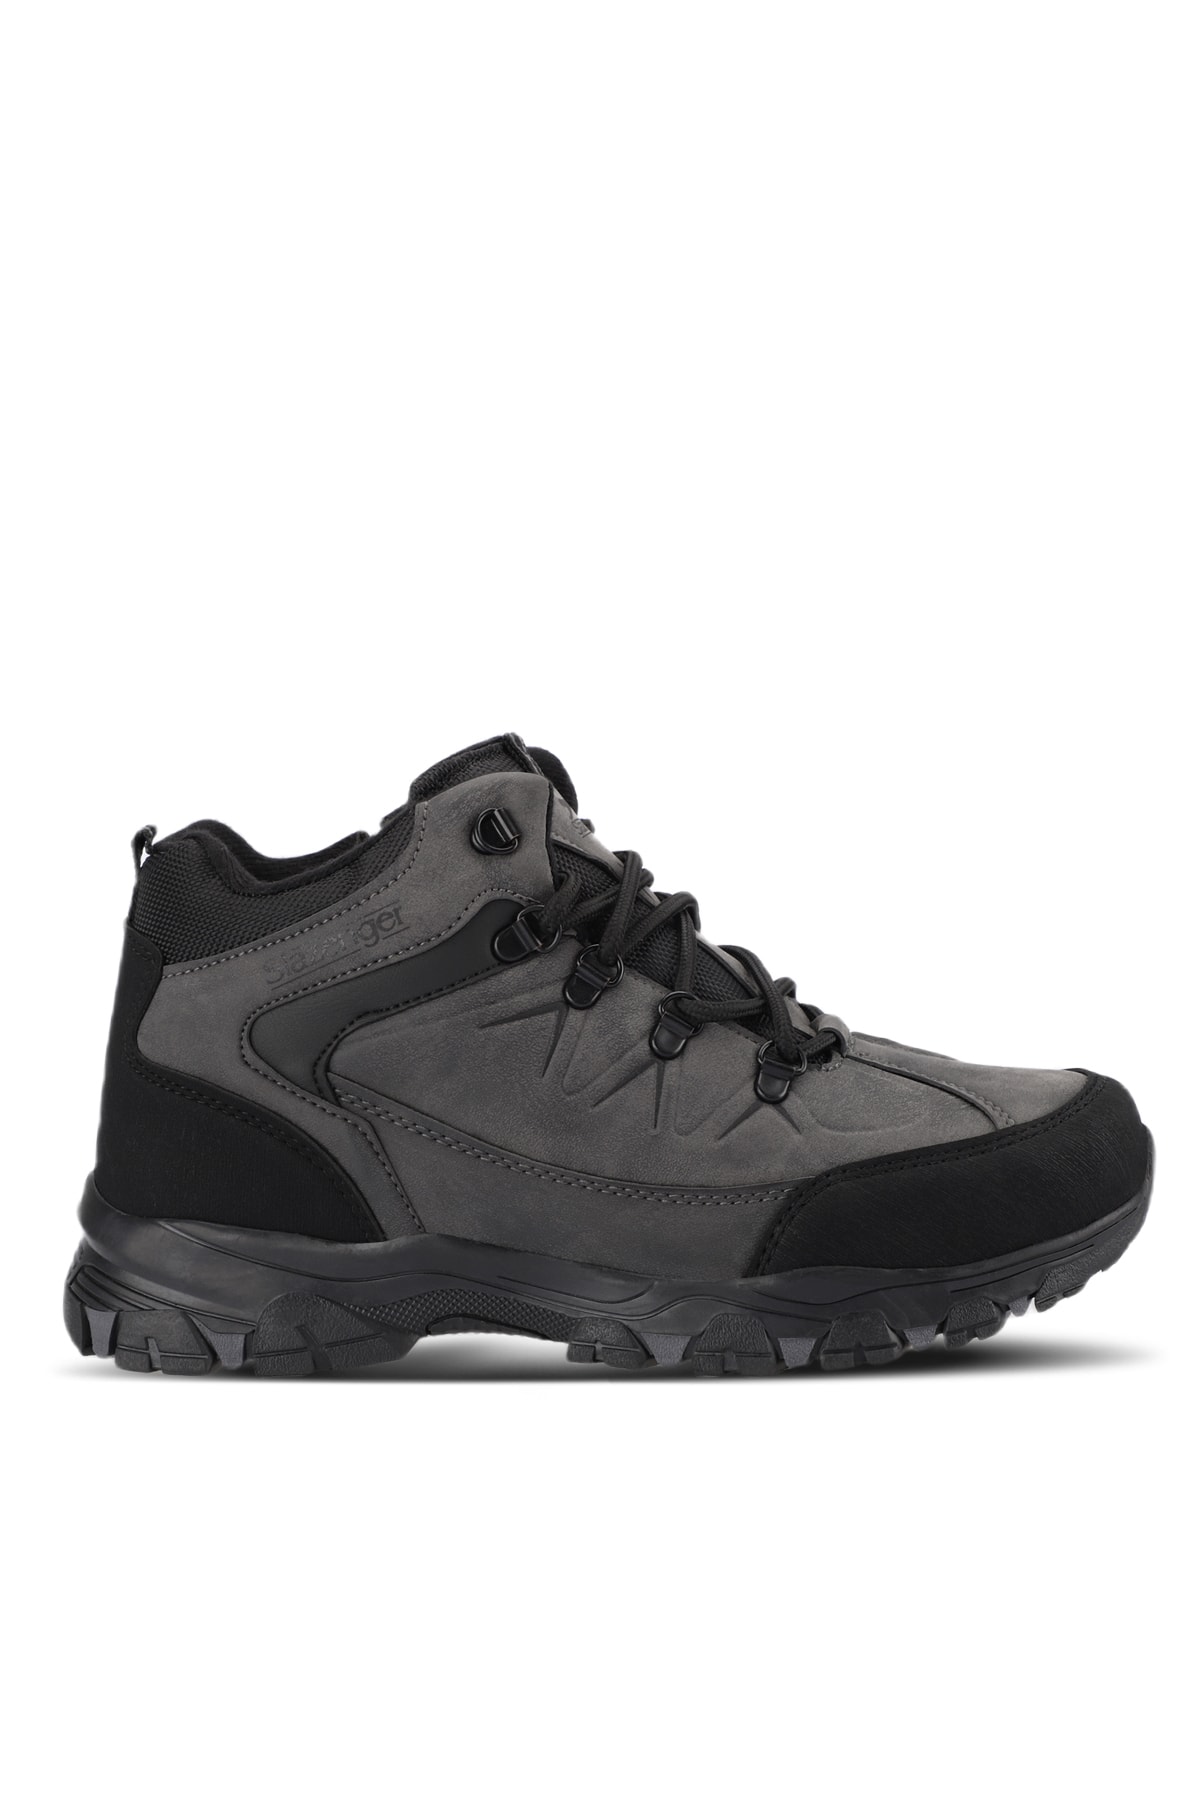 Slazenger DEPENDENT Men's Boots Dark Gray / Black